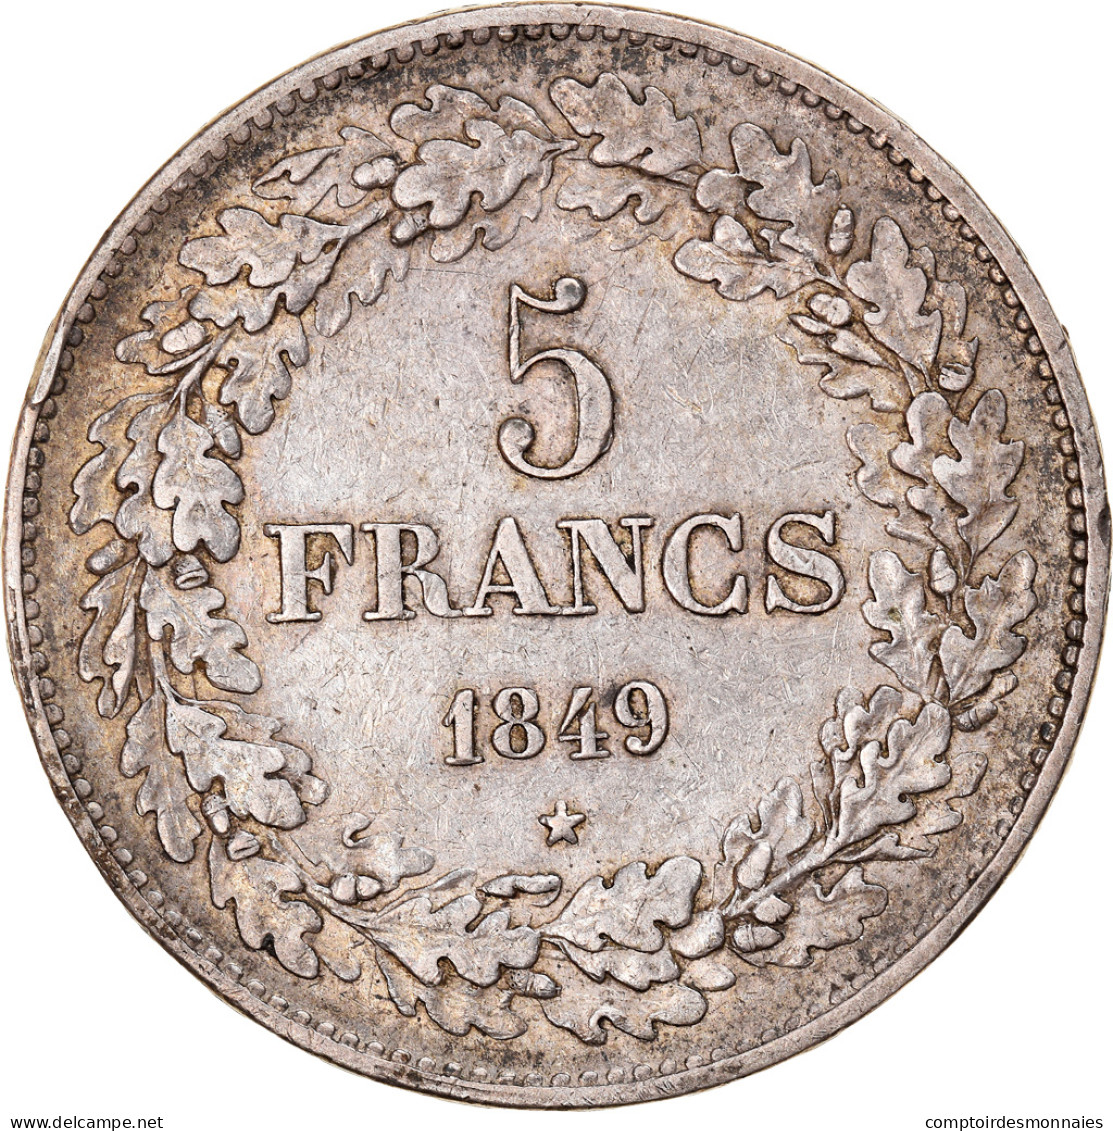 Monnaie, Belgique, Leopold I, 5 Francs, 5 Frank, 1849, TTB, Argent, KM:3.2 - 5 Francs